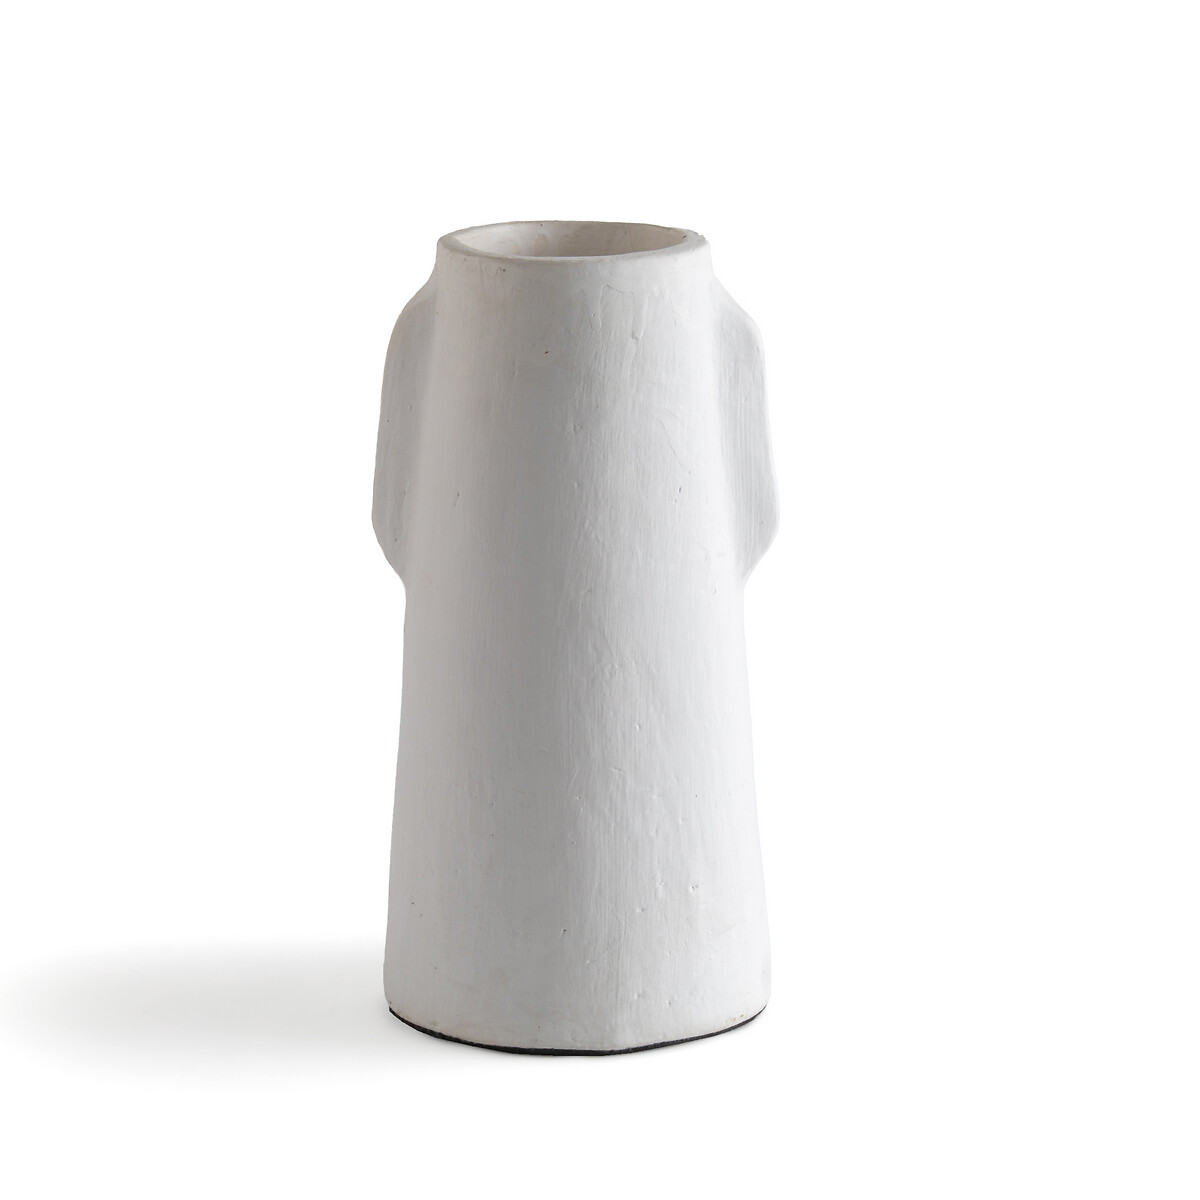 ваза из керамики маленькая модель almada единый размер бежевый Ваза из керамики В31 см Sira единый размер белый